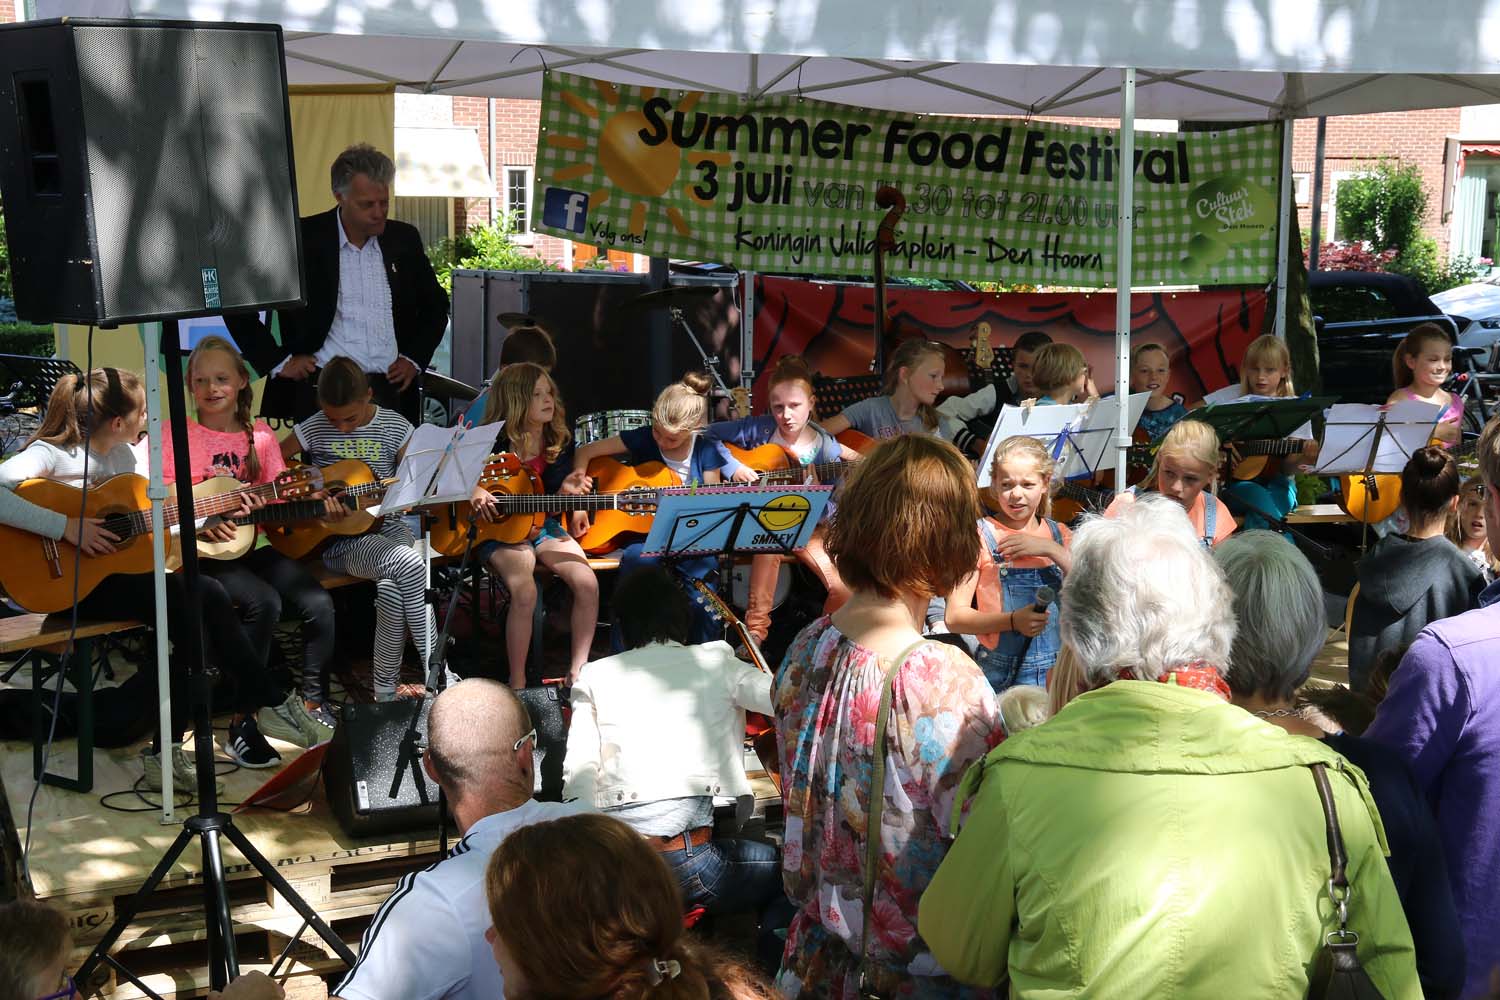 Summer Food Festival Den Hoorn - 3 juli 2016